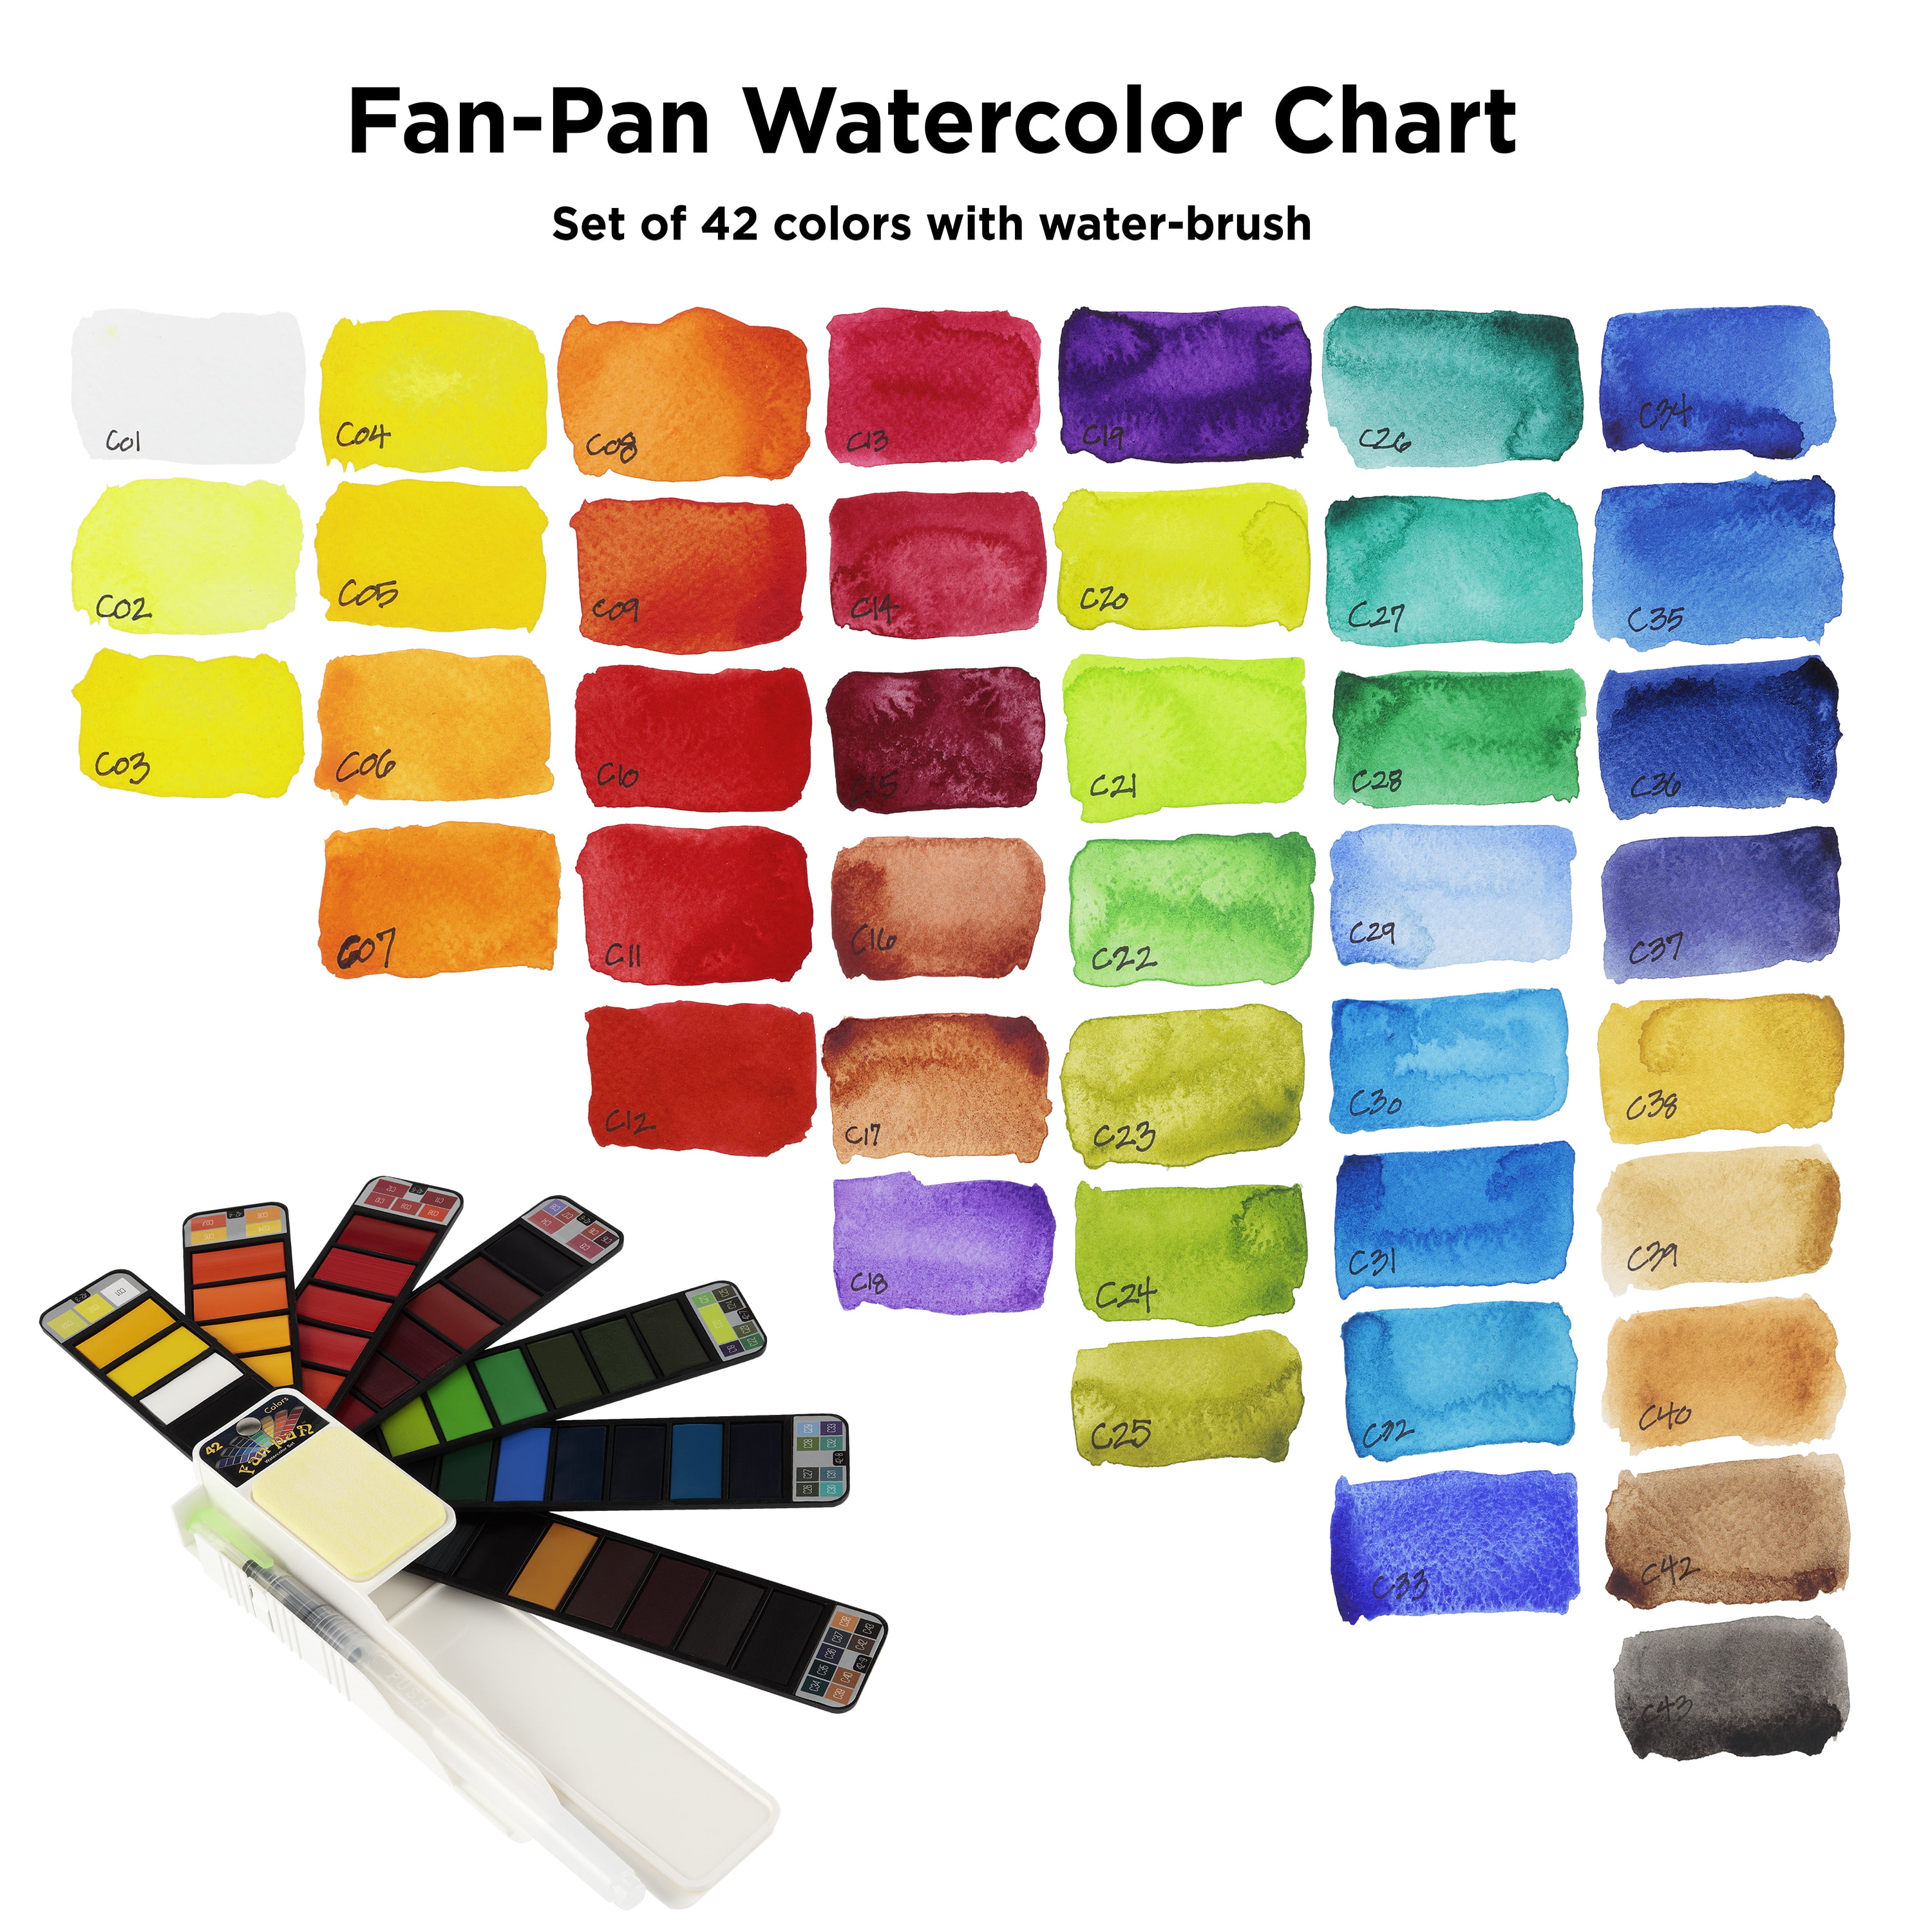 Fantastory Tempera Paint Set 24 Colors (2oz Each), Washable Paint for